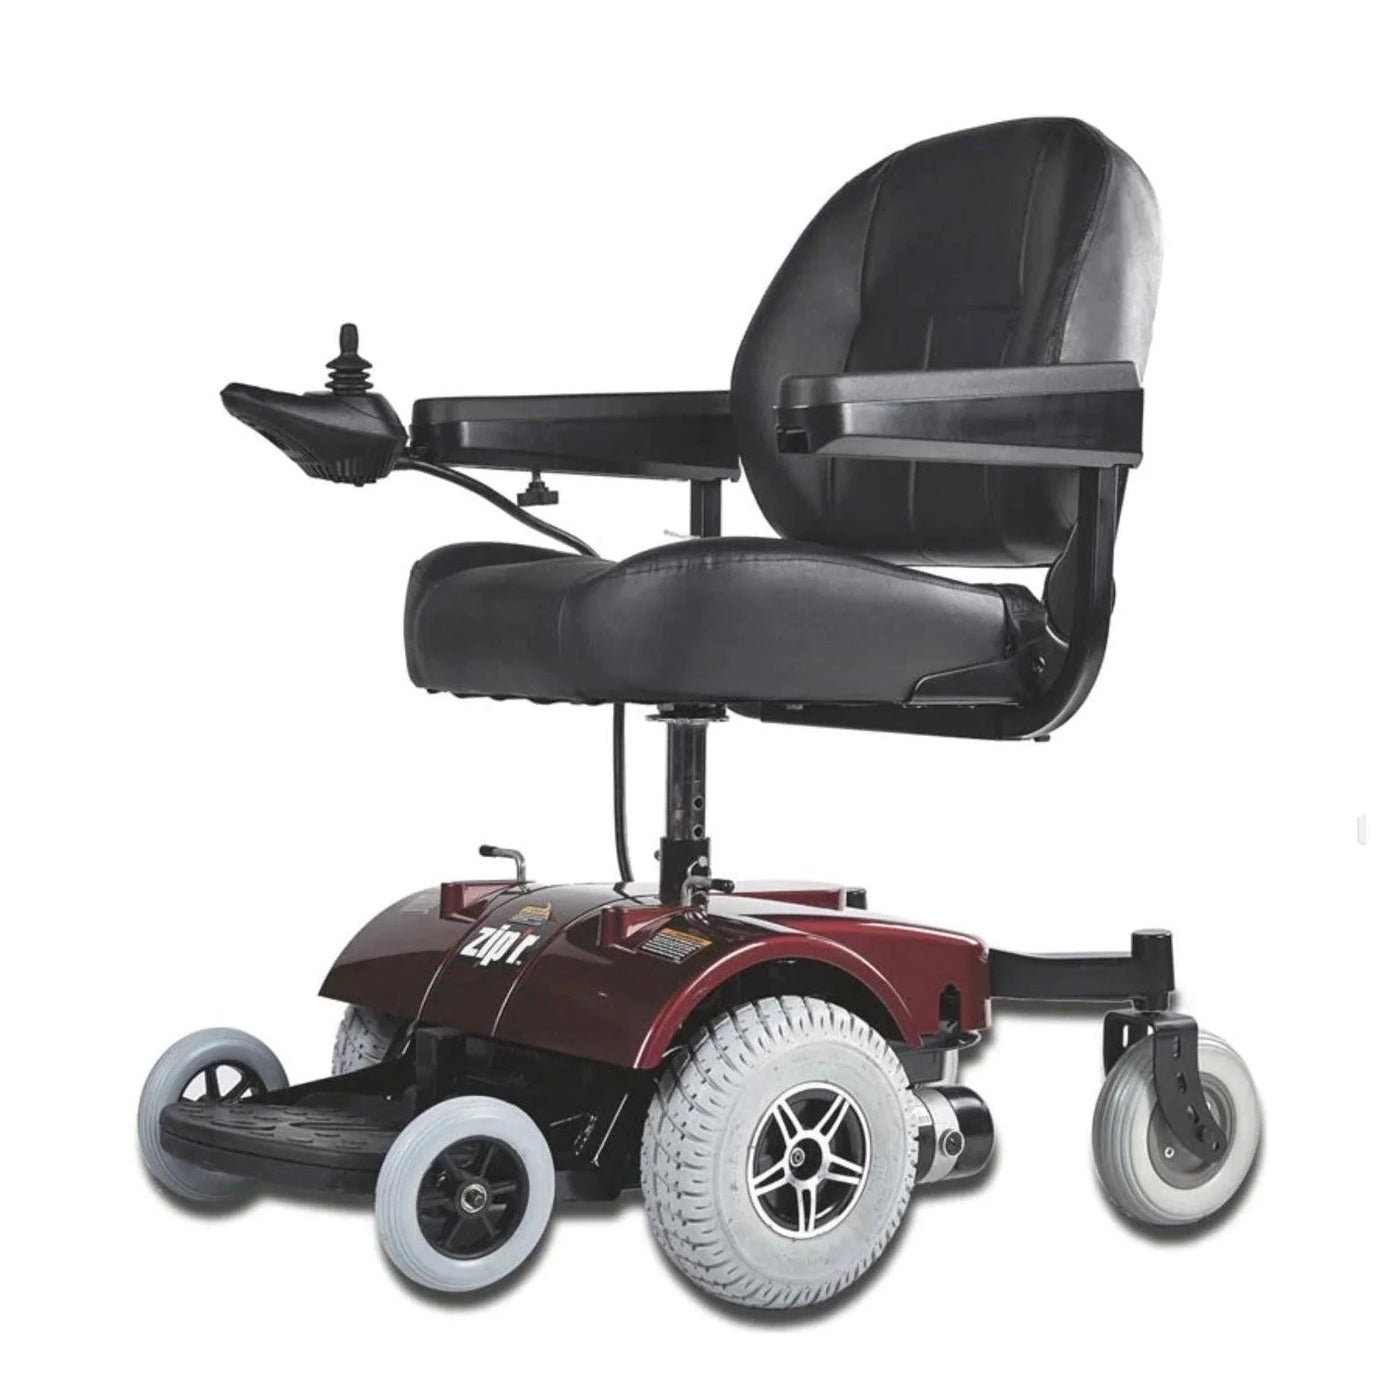 Zip'r Zip'r PC Heavy Duty Power Electric Wheelchair - eBike Haul